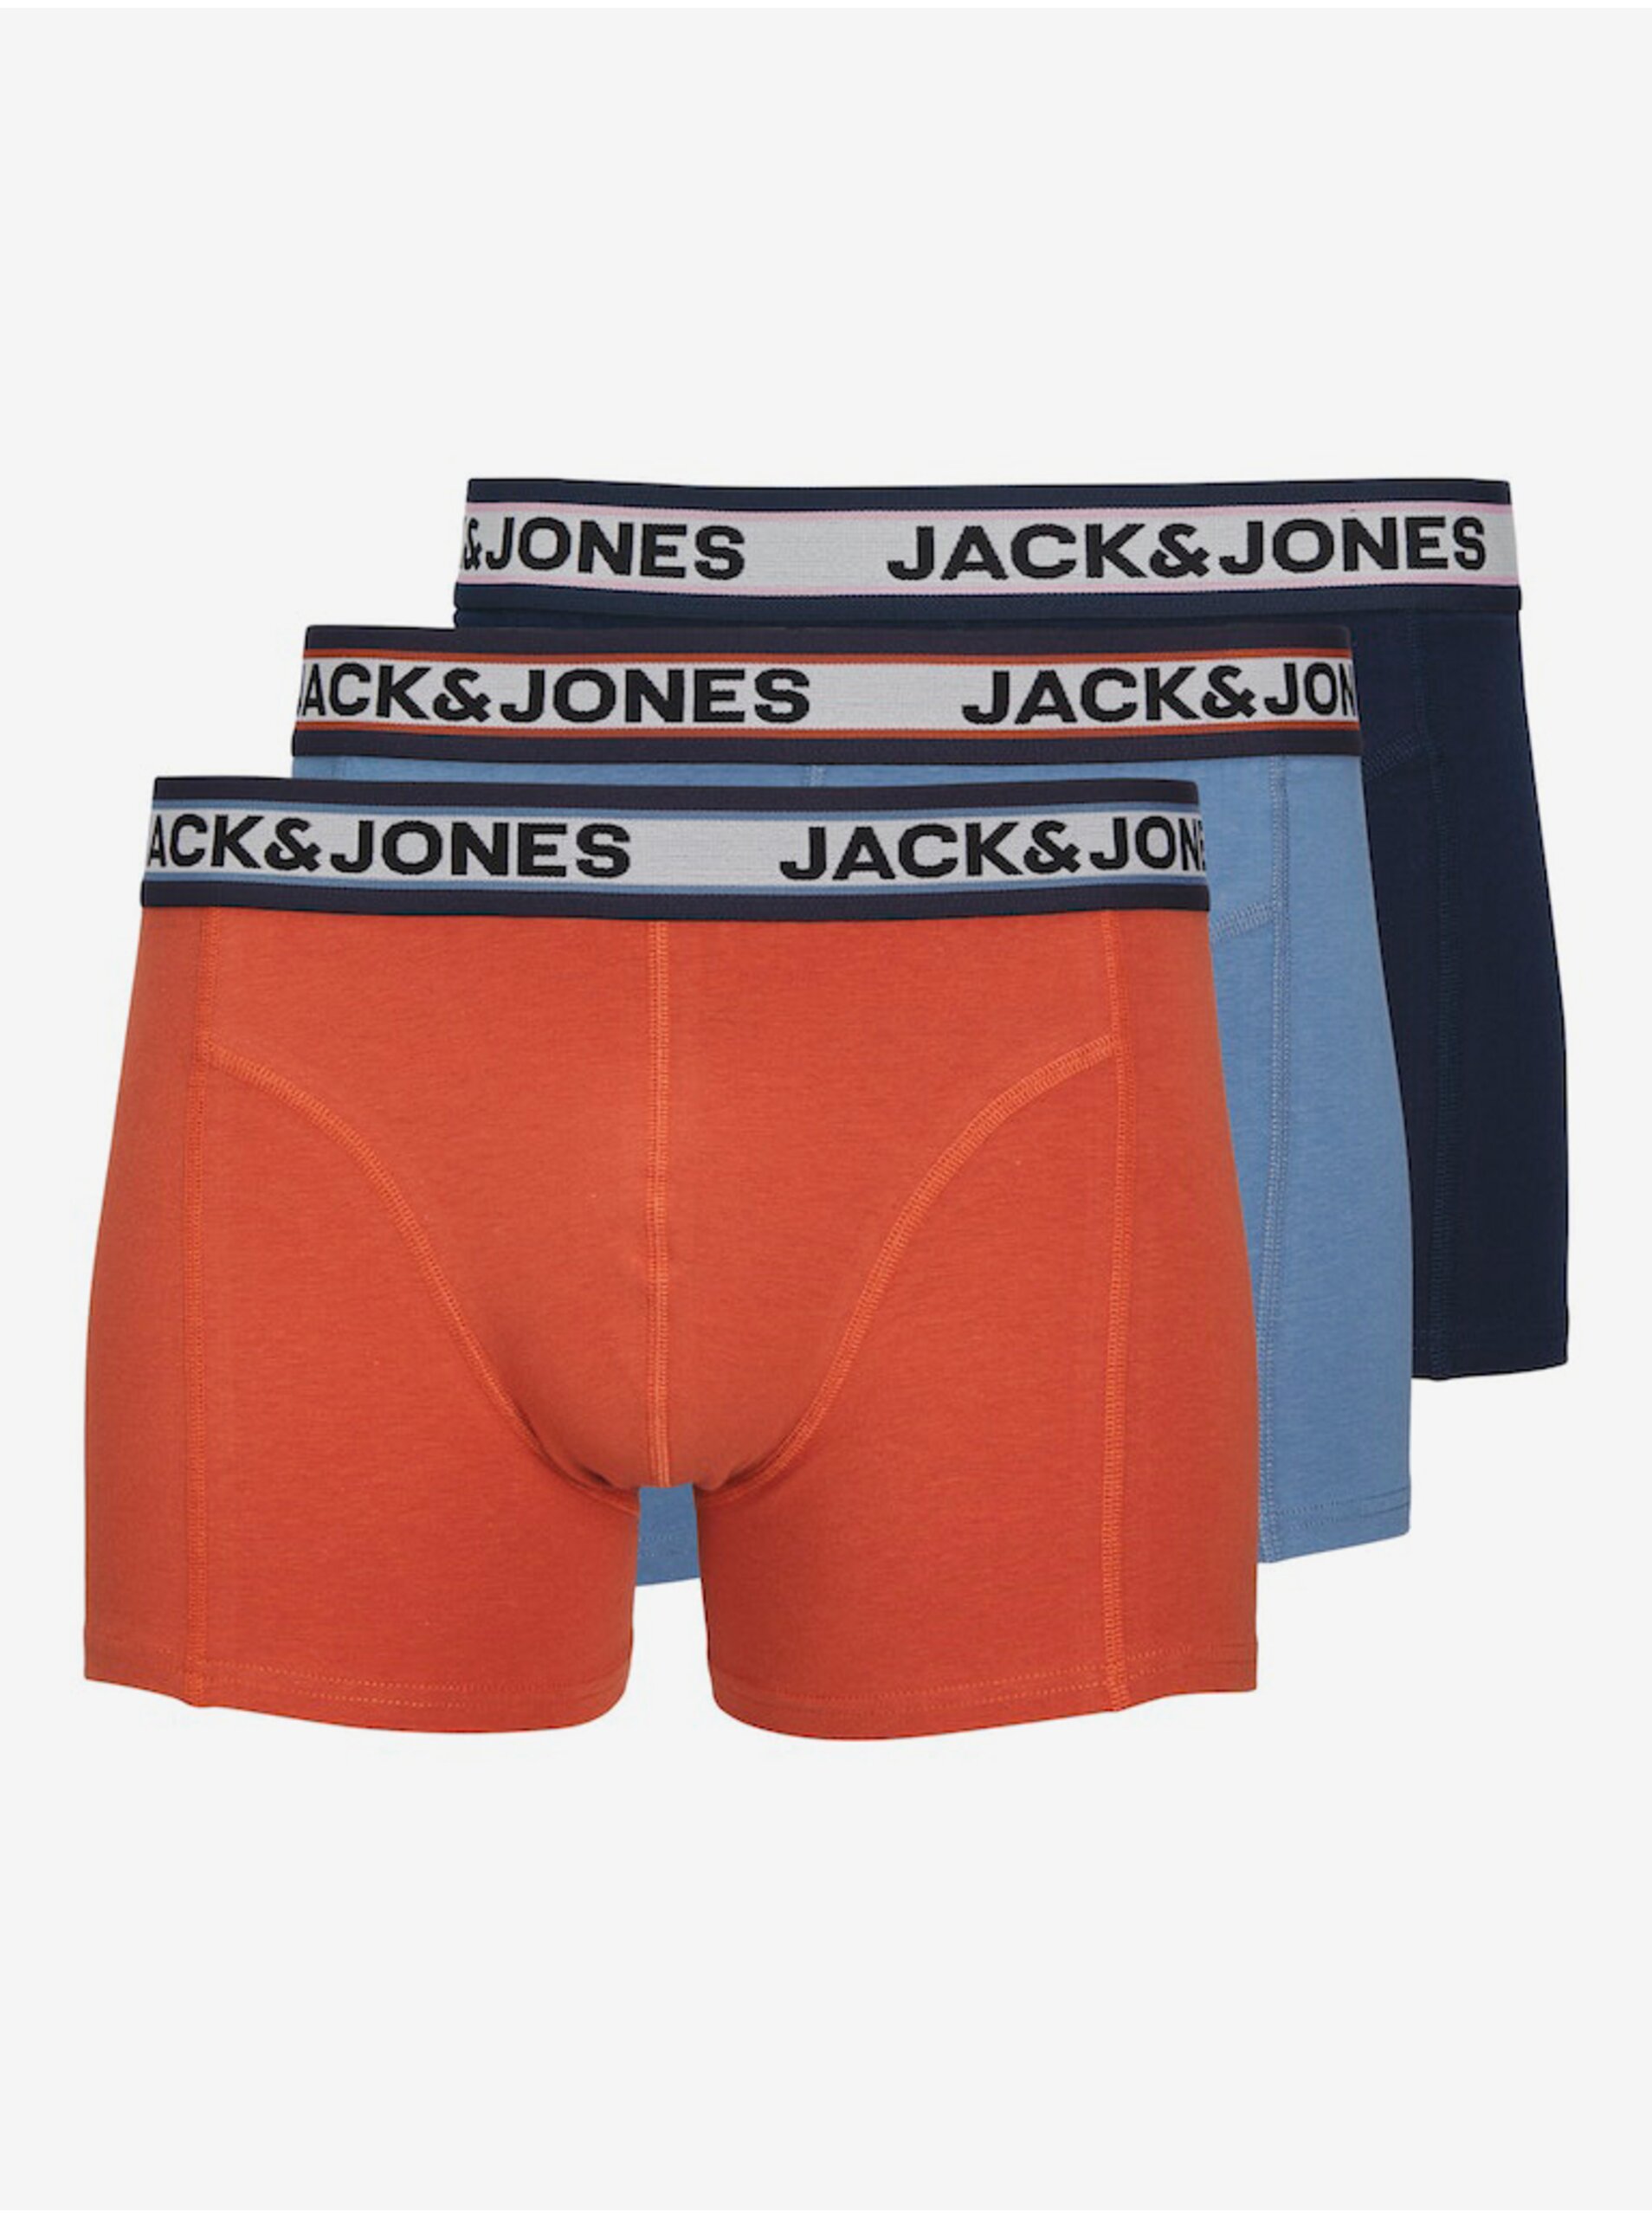 E-shop Súprava troch pánskych boxeriek v modrej a oranžovej farbe Jack & Jones